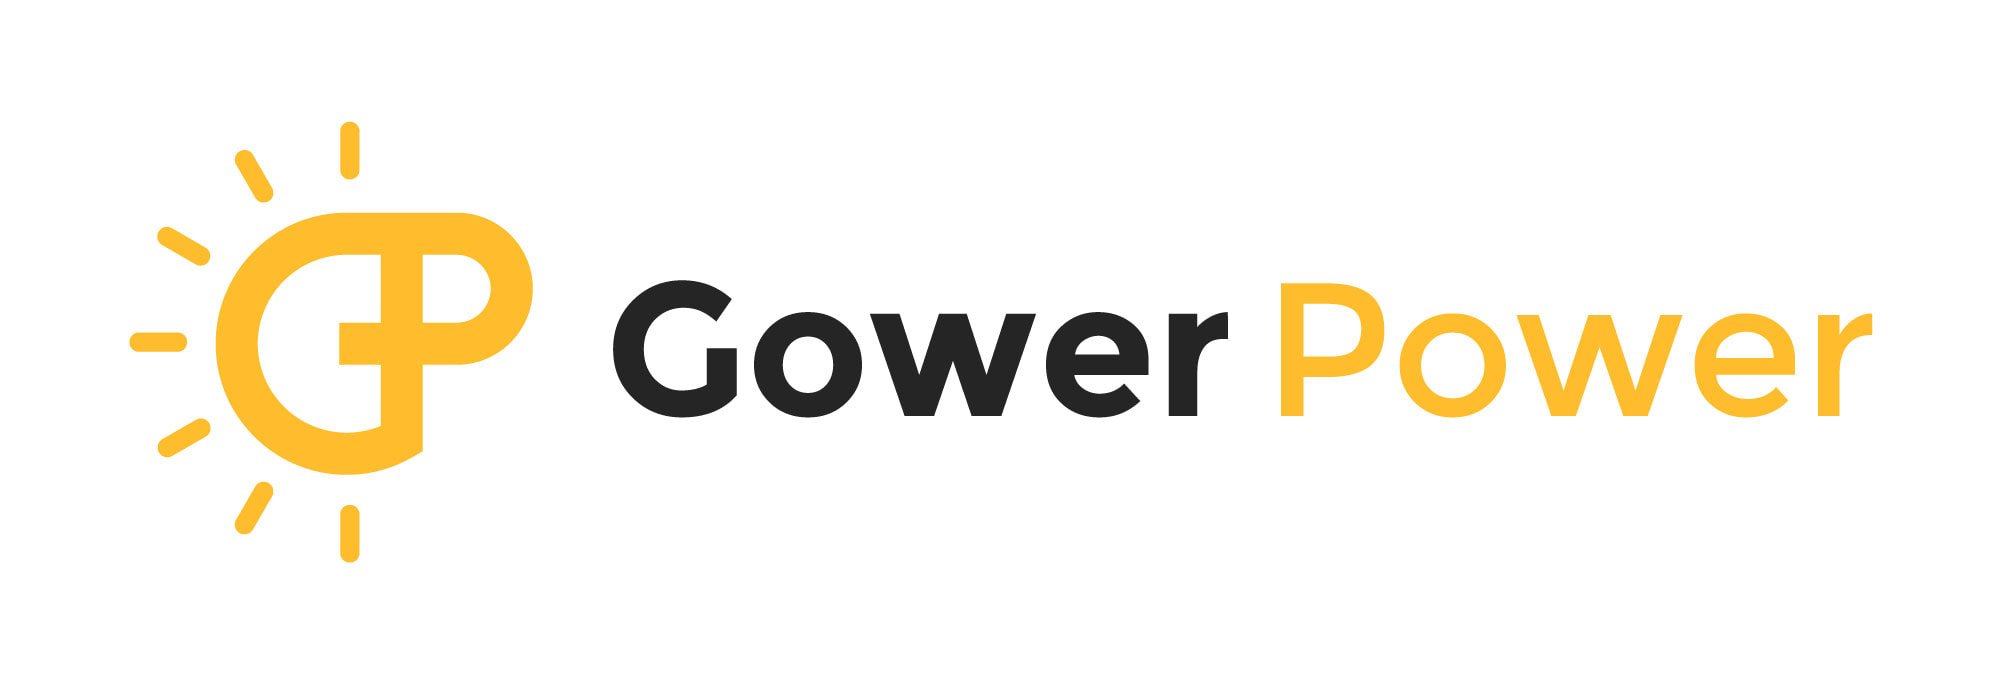 gower-power-on-white_2_orig-2.jpg